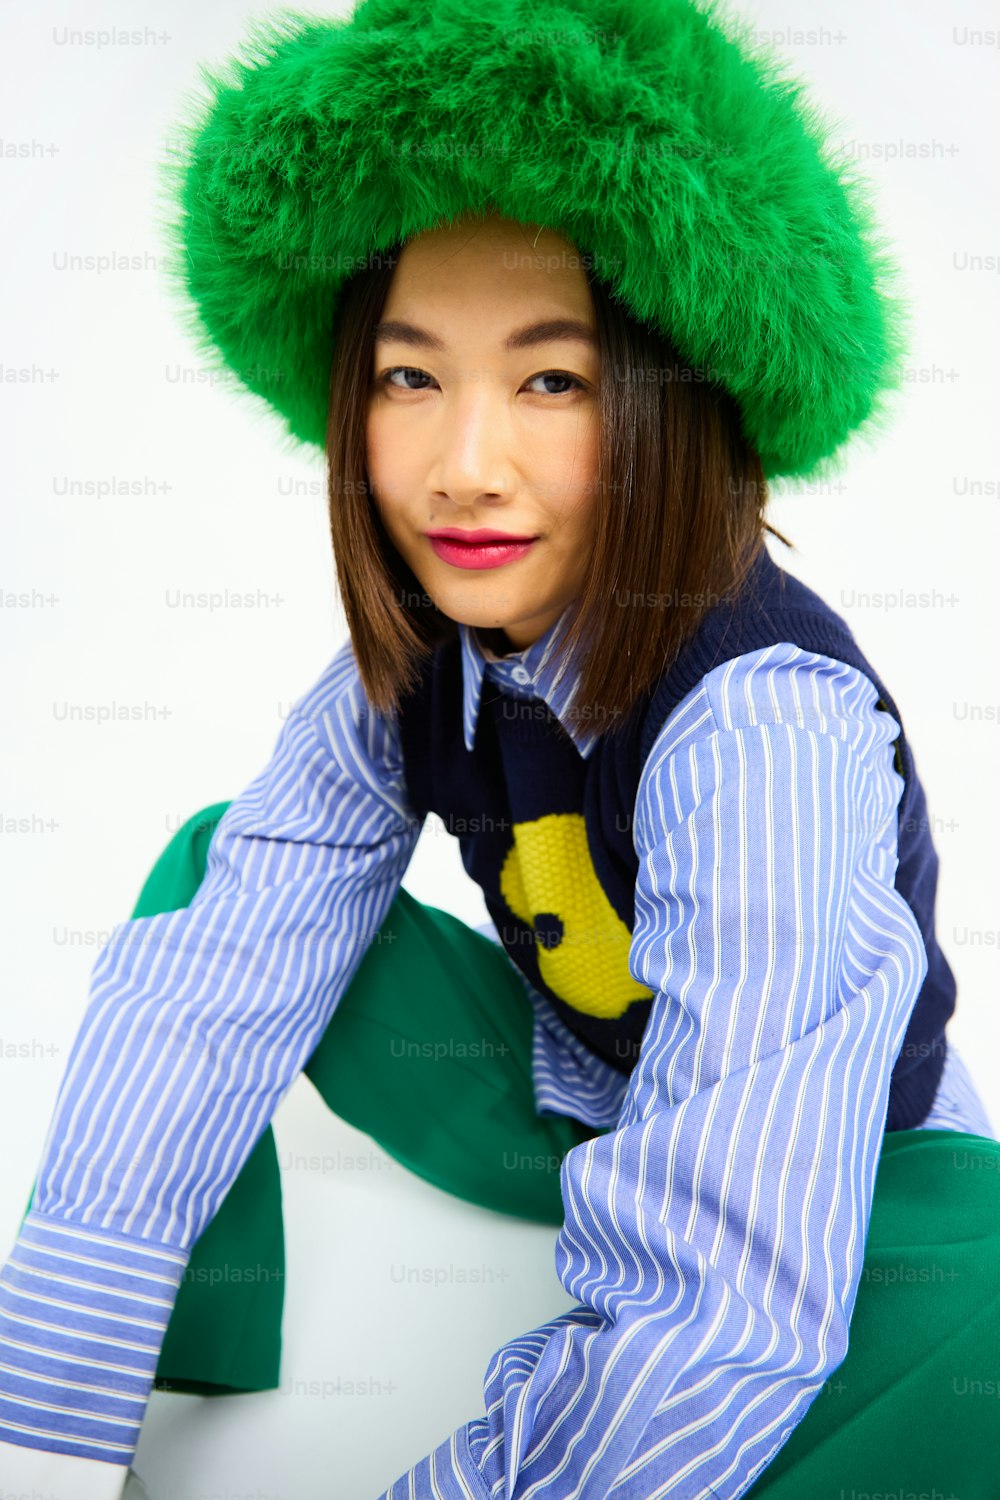 una donna che indossa un cappello verde e una camicia a righe